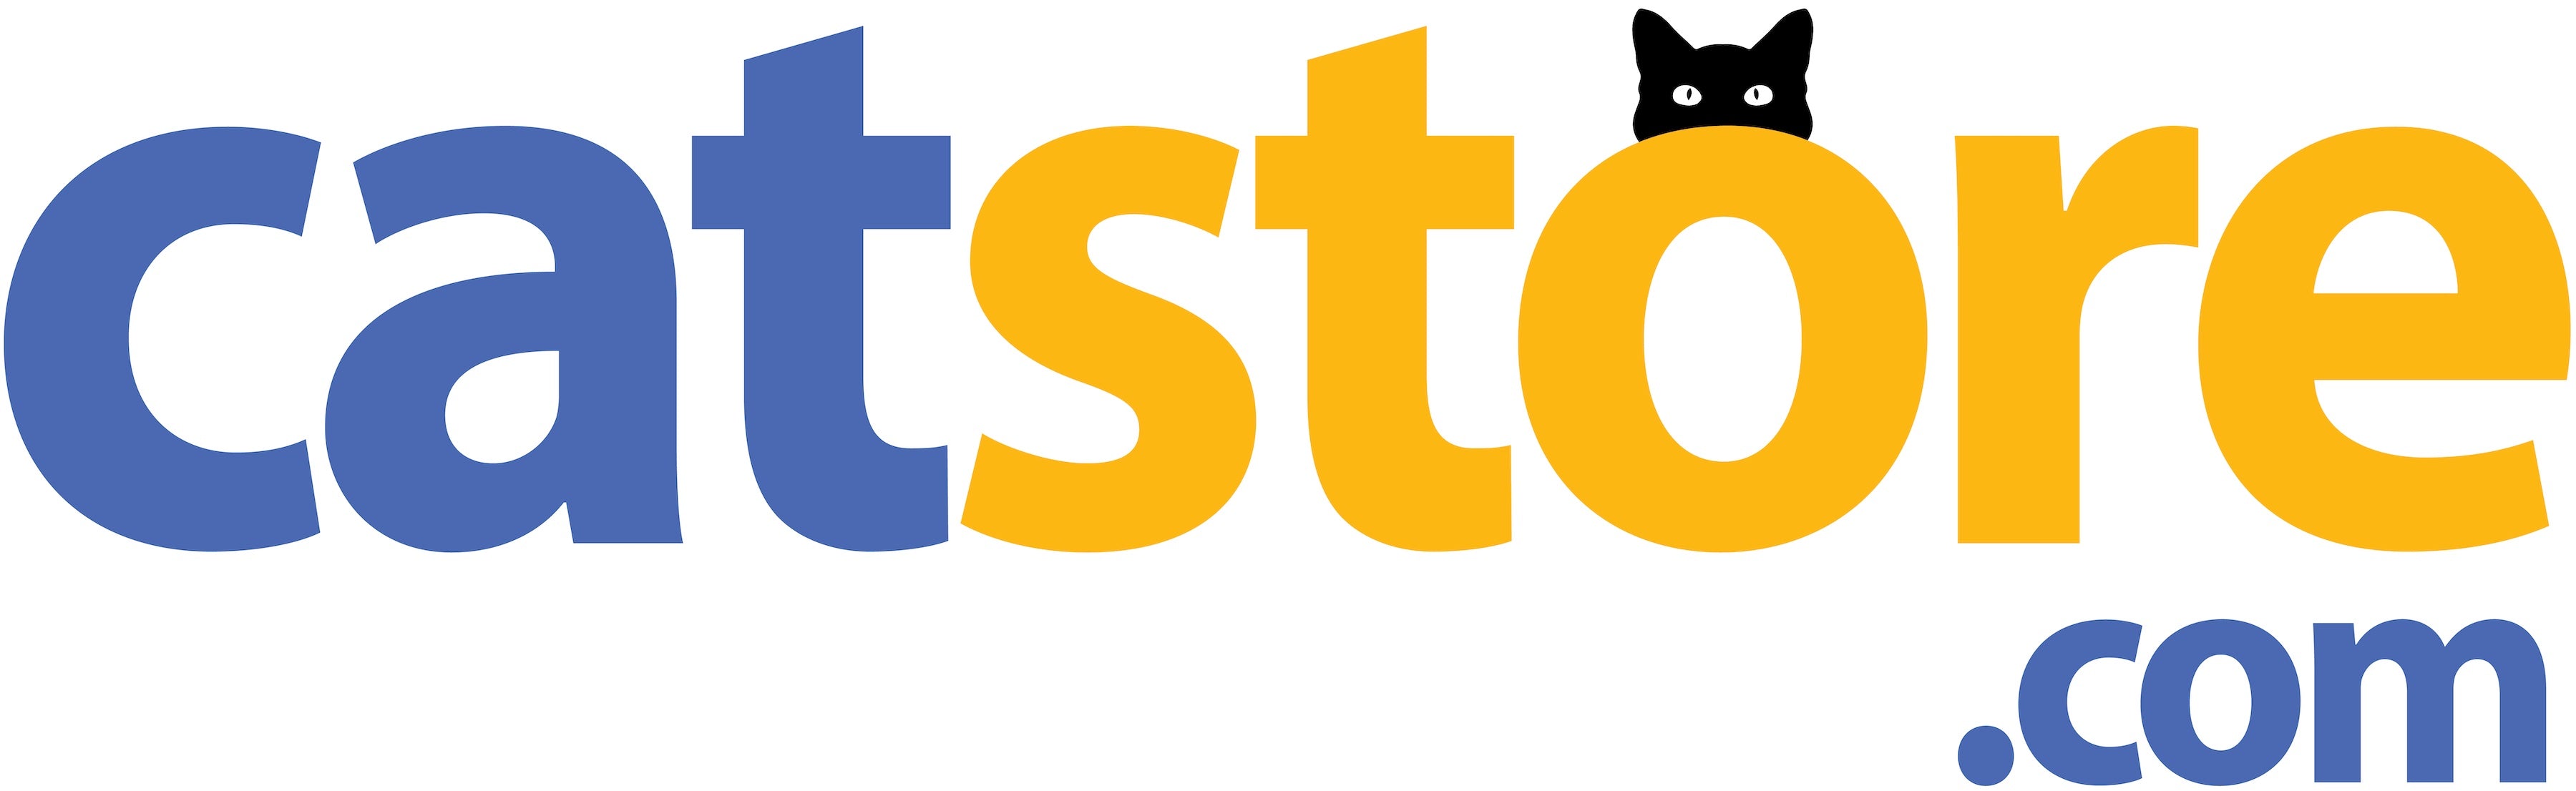 Catstore.com